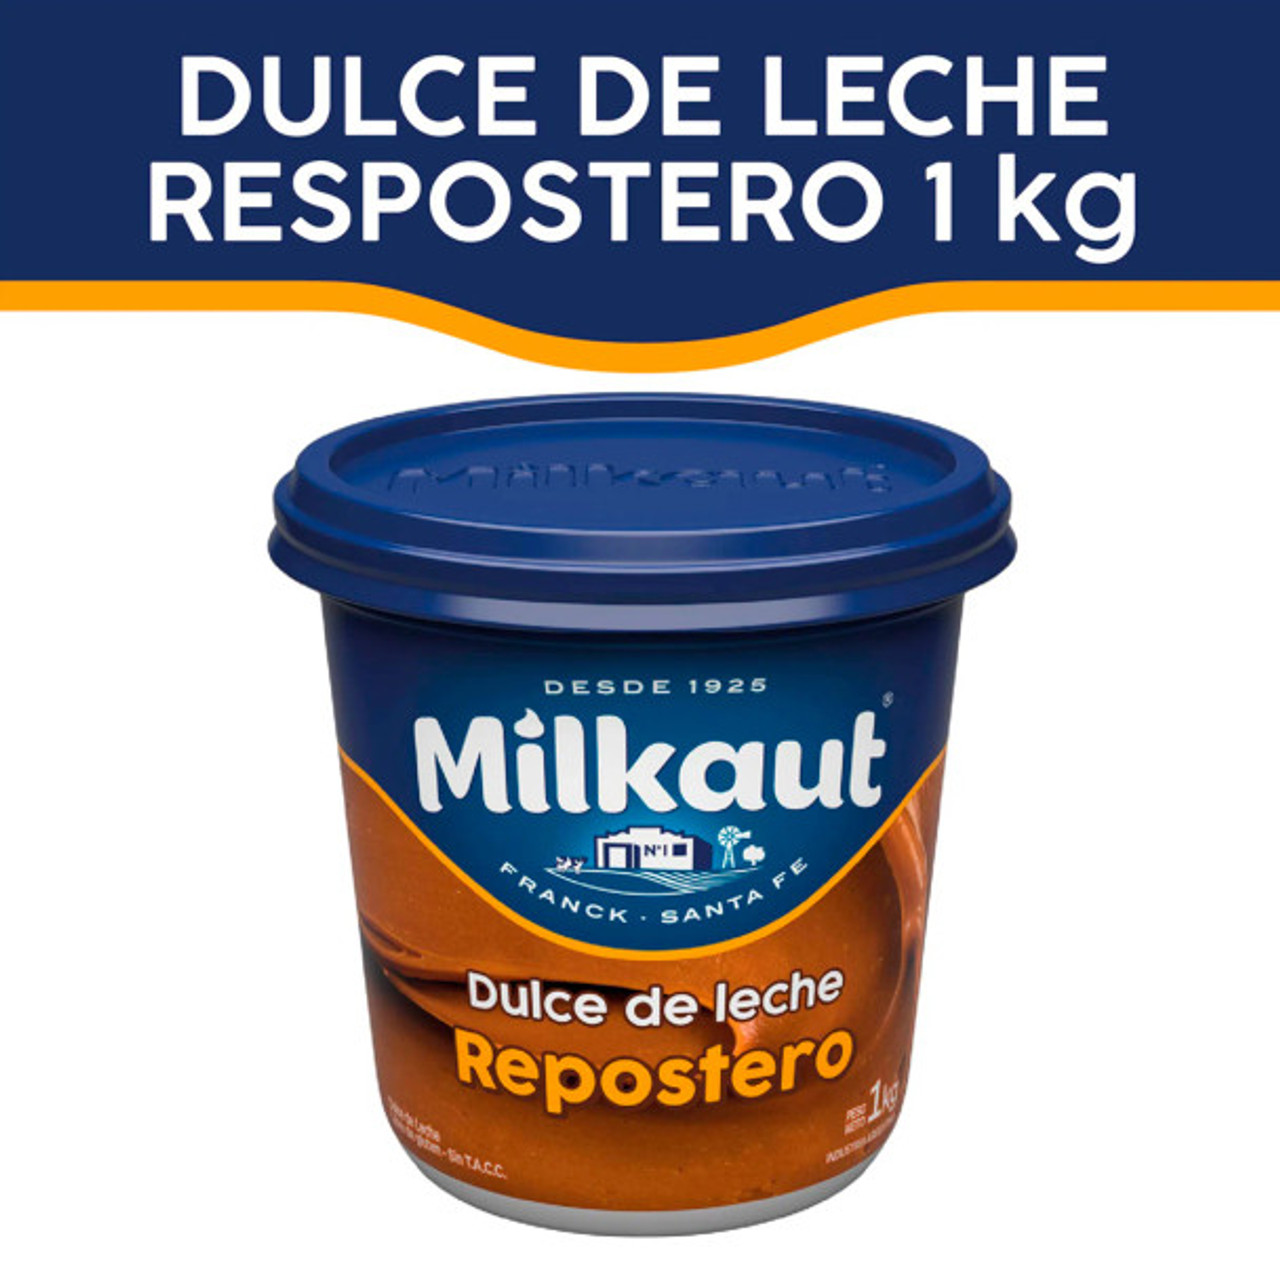 Milkaut Dulce de Leche Repostero, 1 kg / 35.27 oz